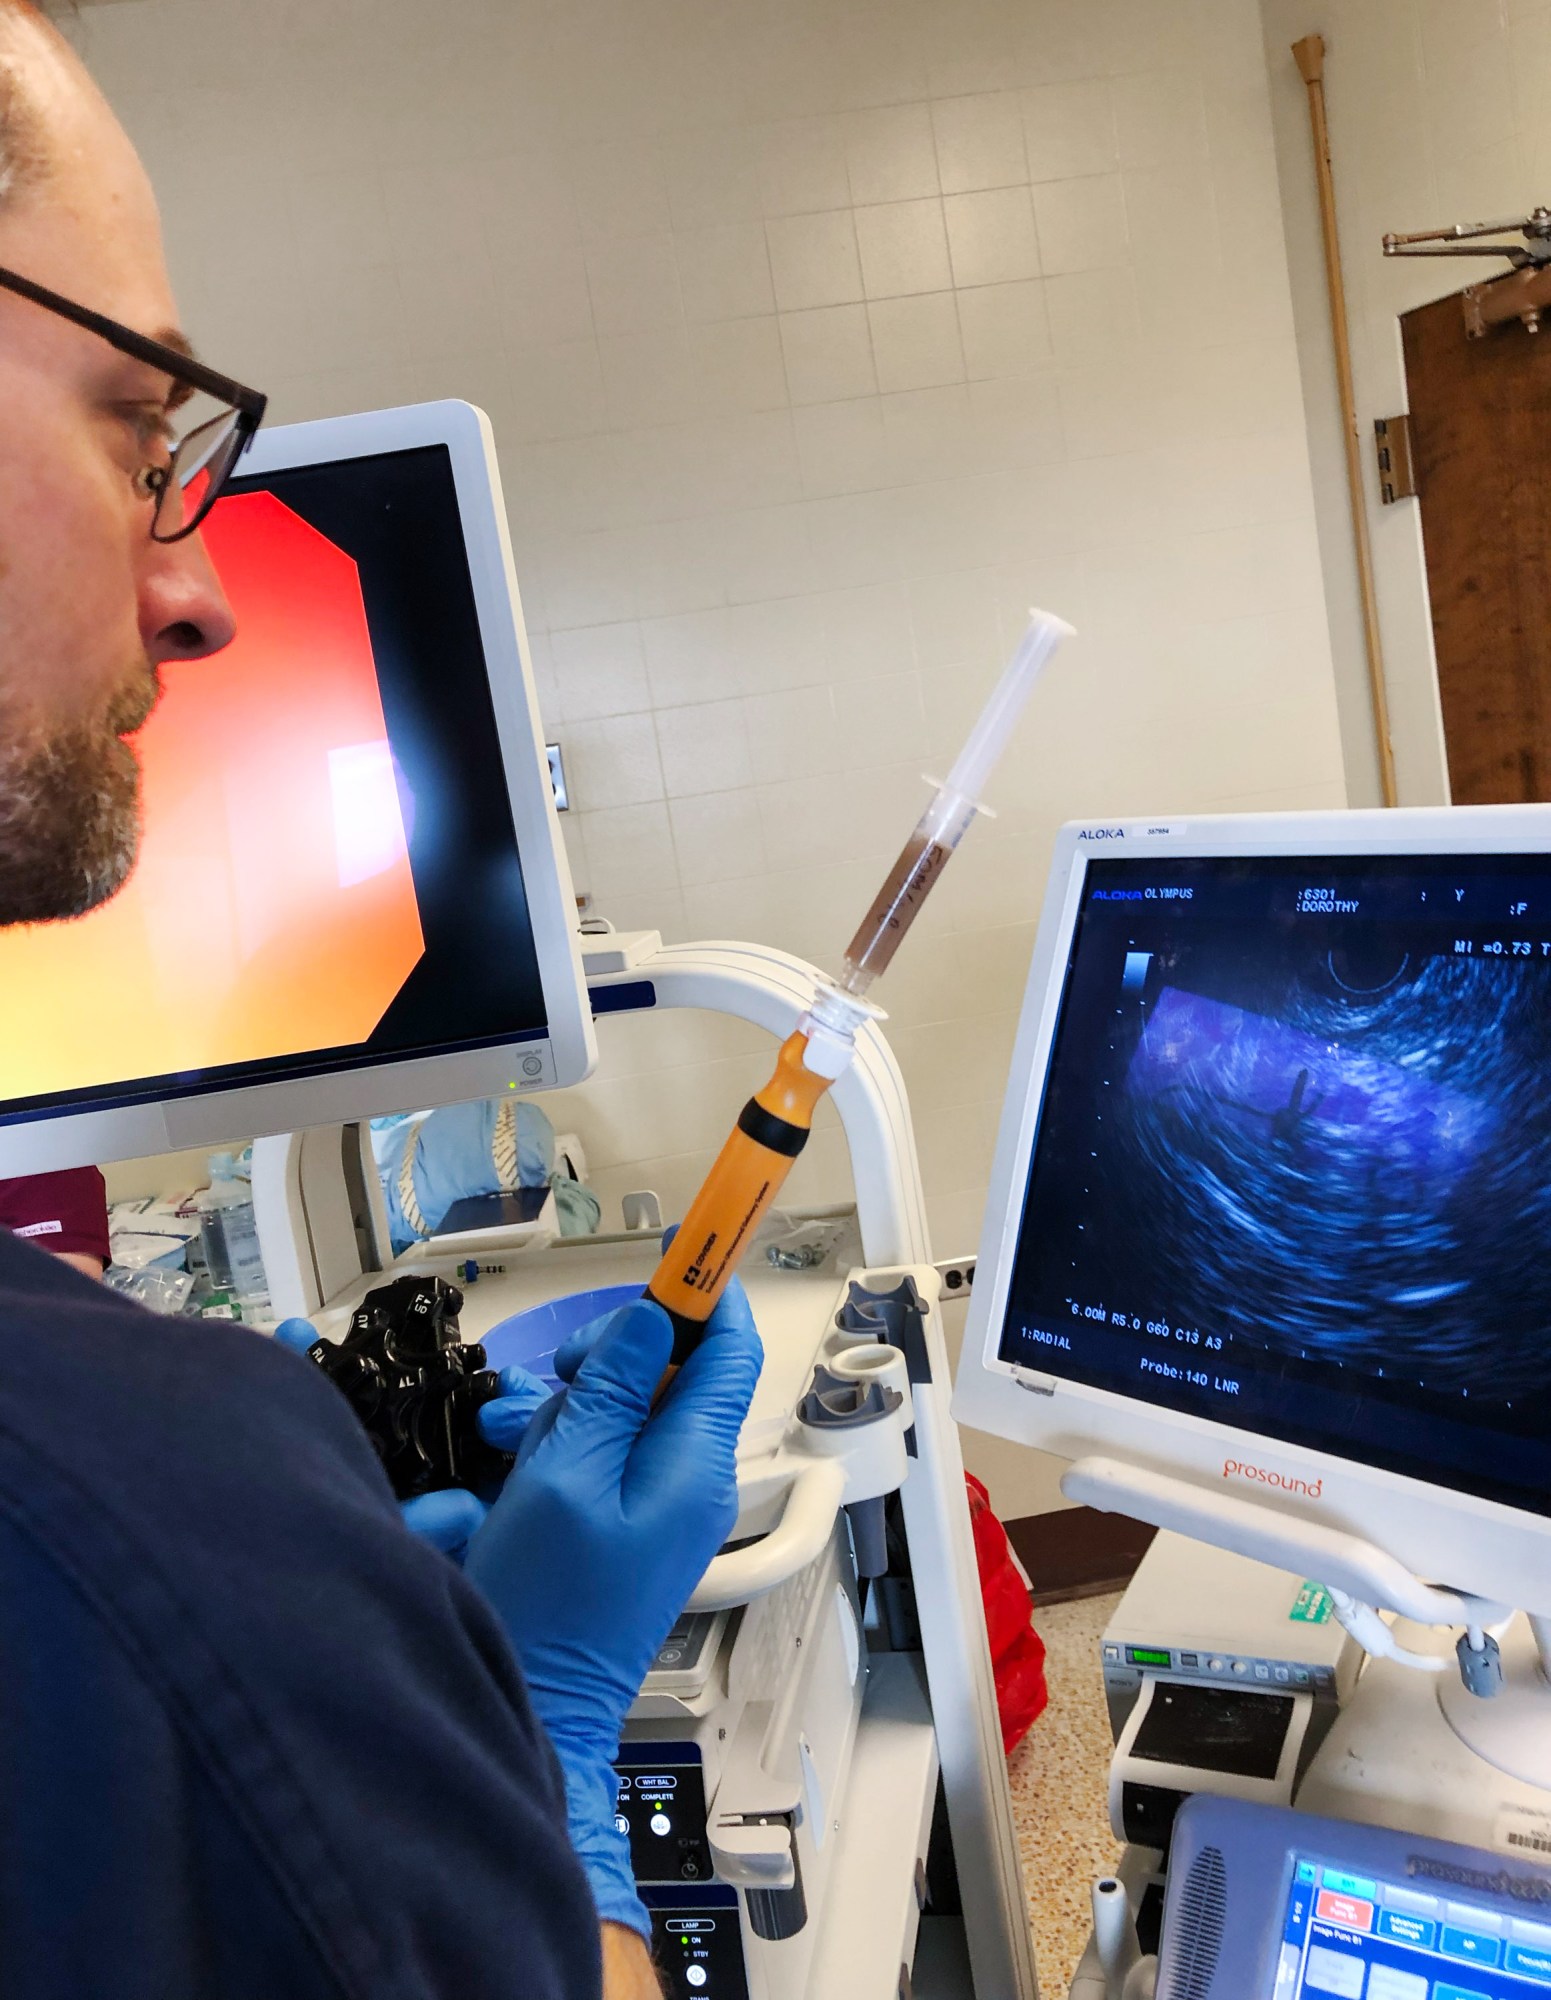 peneliti memegang jarum suntik dan menonton mesin ultrasound